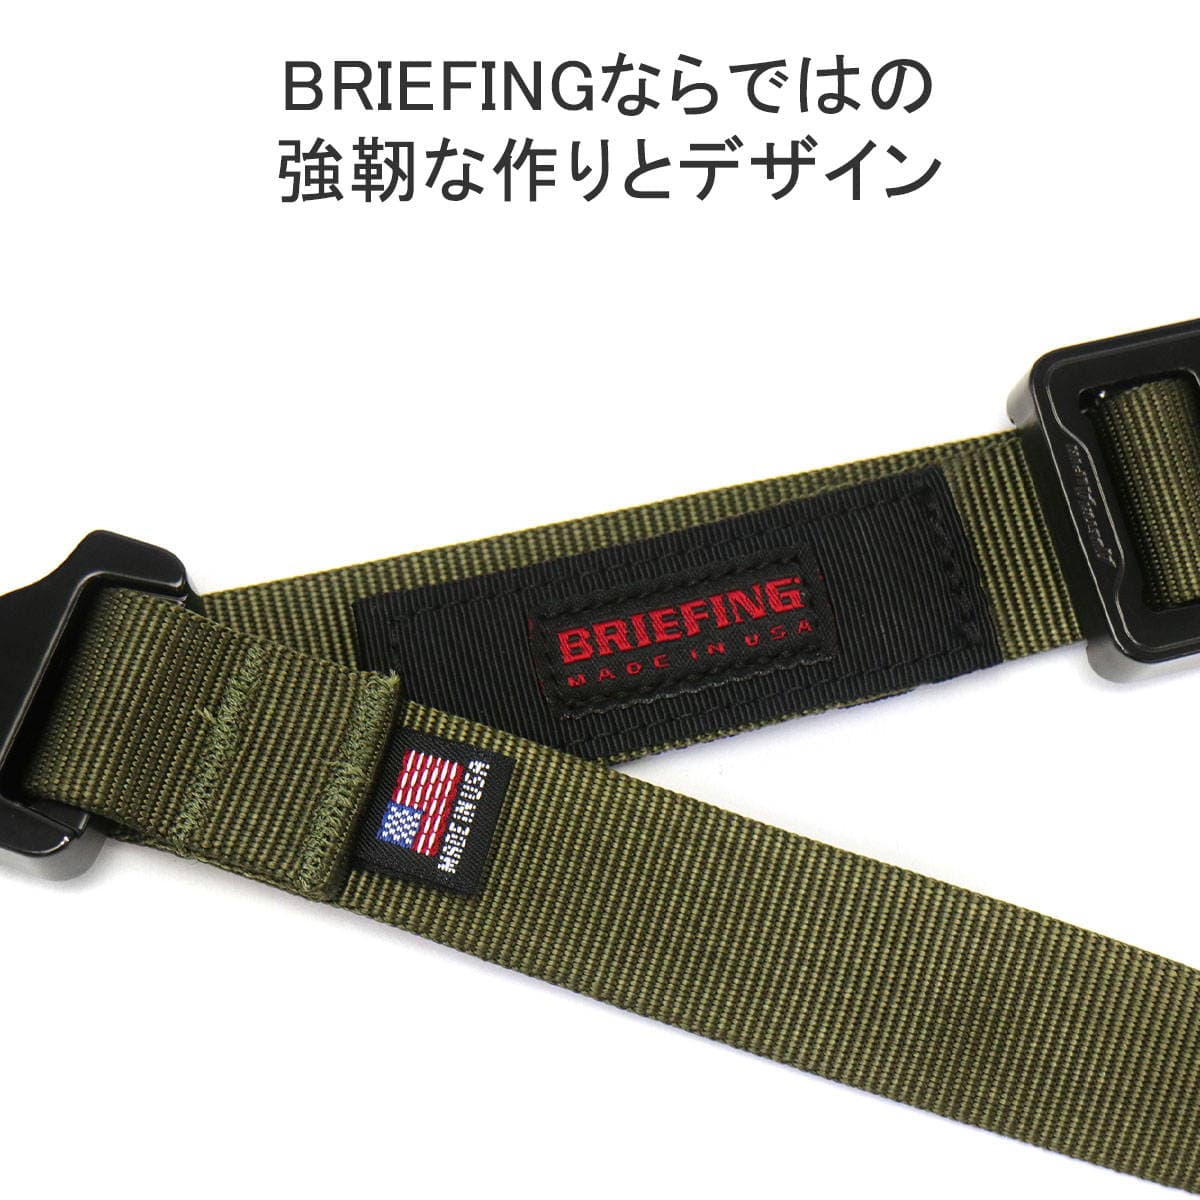 日本正規品】BRIEFING ブリーフィング COBRA buckle belt MADE IN USA ...